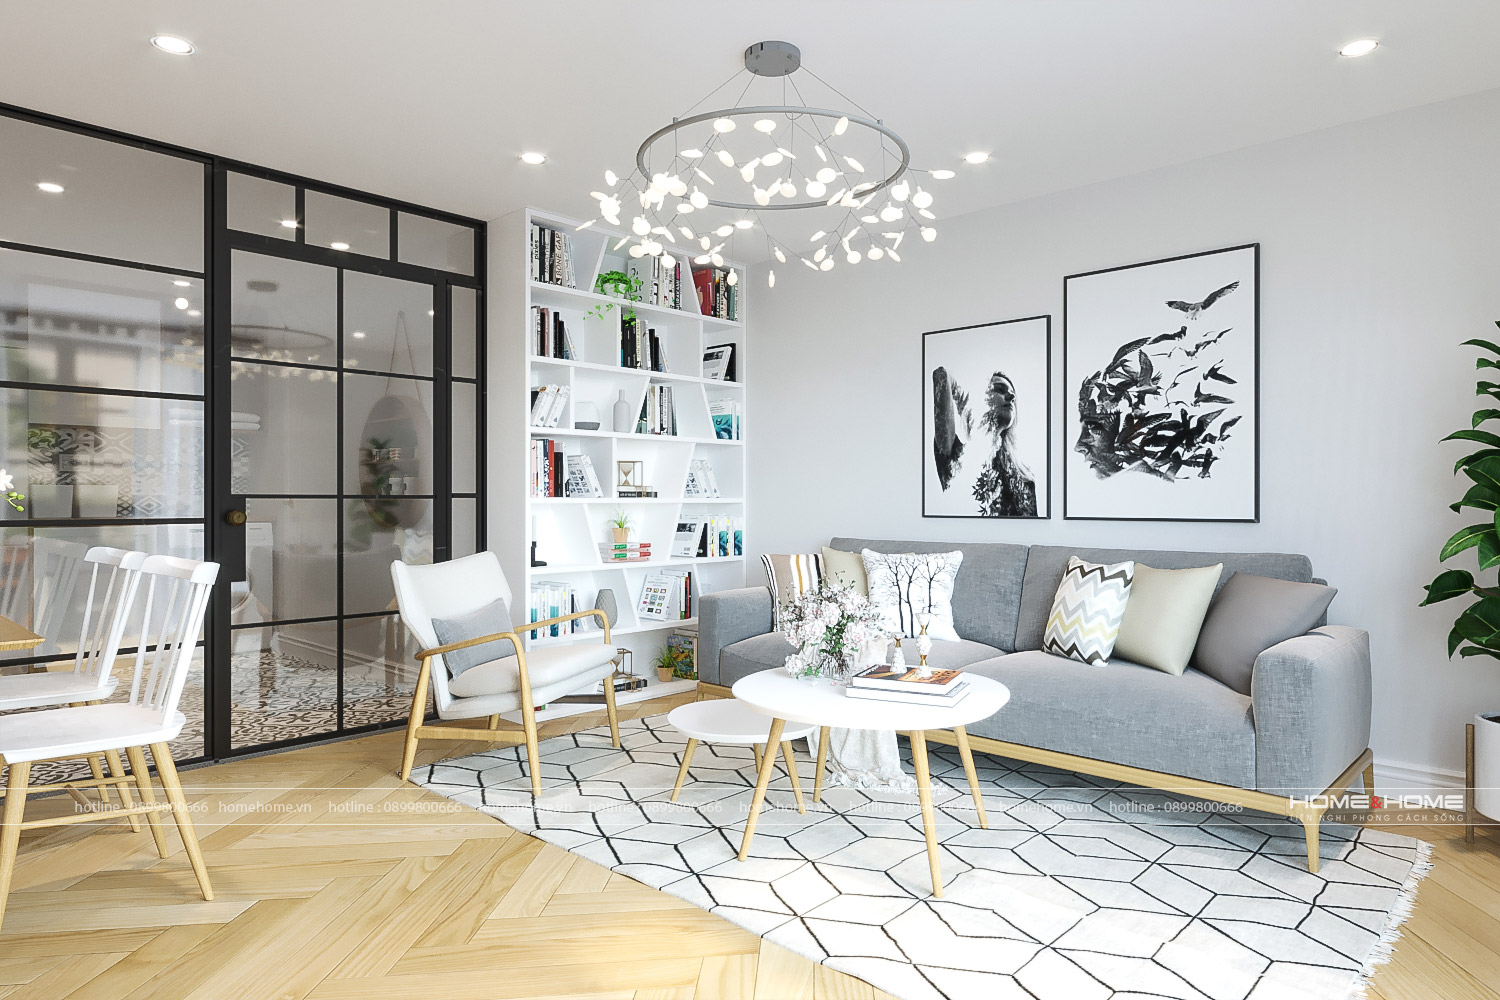 Nếu bạn đang tìm kiếm một phong cách thiết kế nội thất đơn giản, tinh tế và hiện đại thì Scandinavian là sự lựa chọn hoàn hảo. Kết hợp giữa chất liệu tự nhiên và màu sắc nhã nhặn, thiết kế này sẽ mang đến cho ngôi nhà của bạn một không gian đầy tinh thần Bắc Âu.